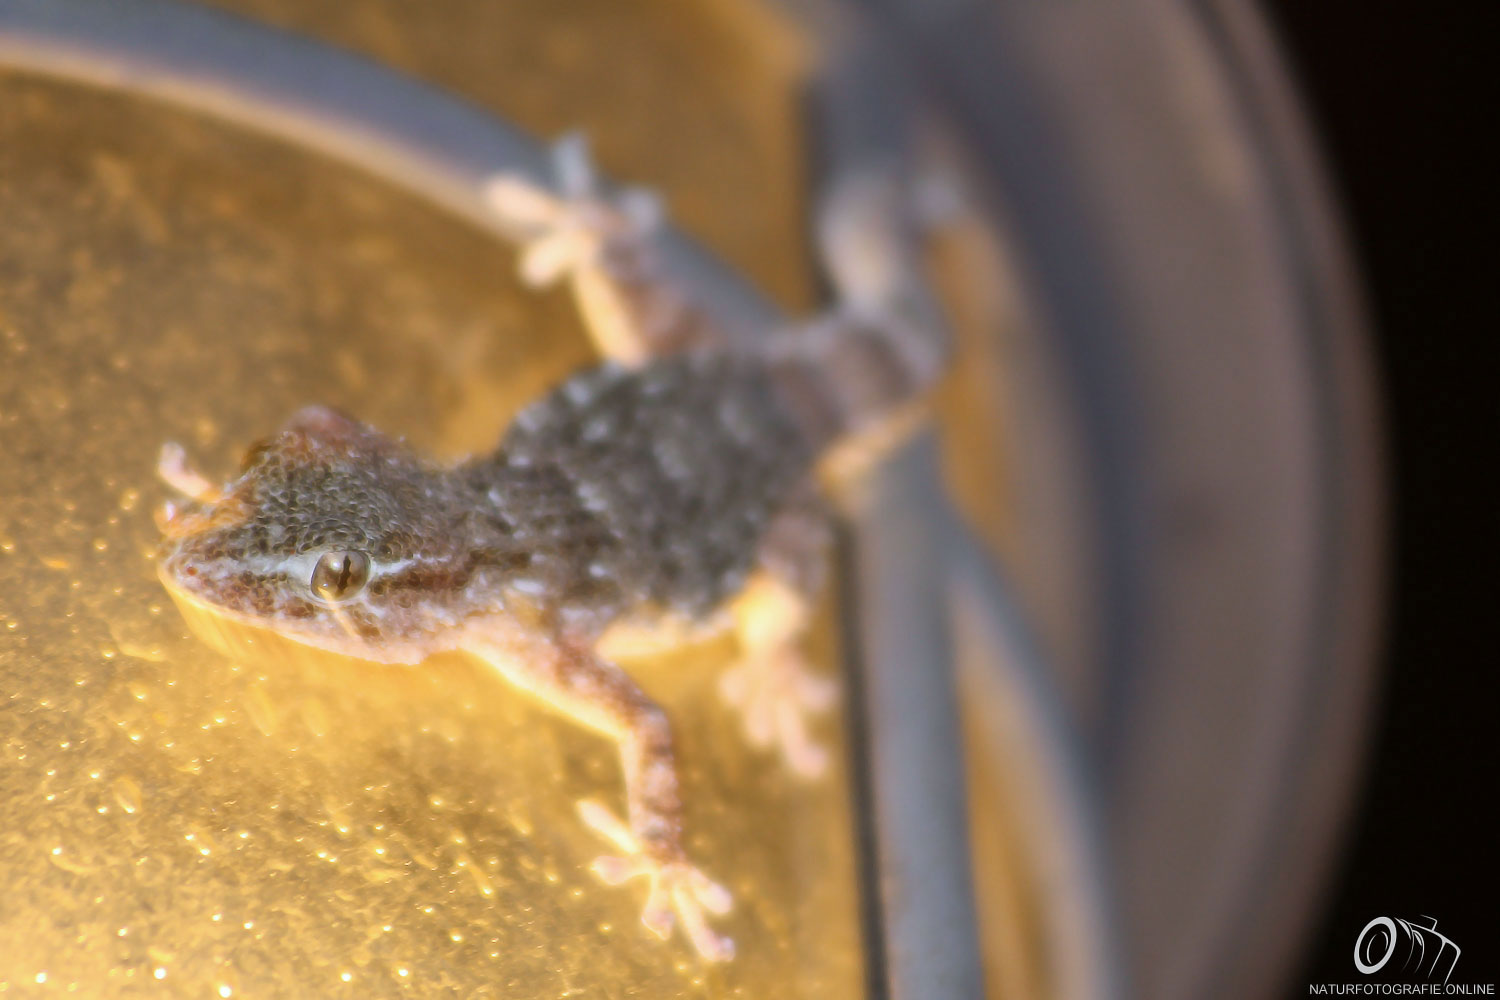 Gecko in Lauerstellung auf der Lampe